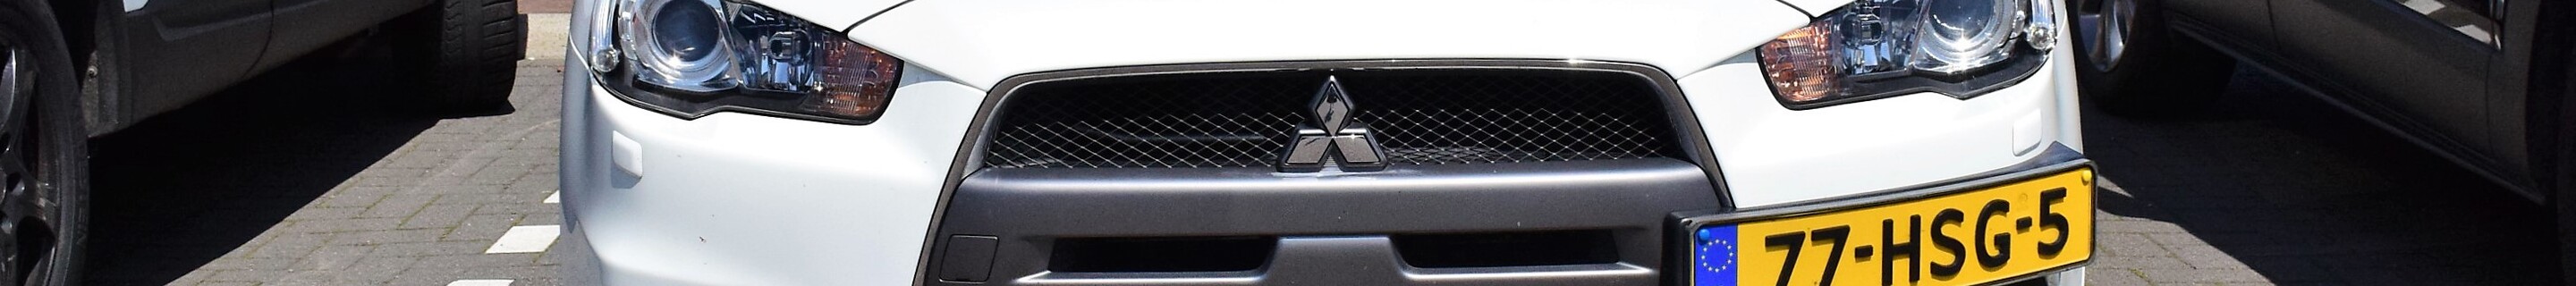 Mitsubishi Lancer Evolution X MR